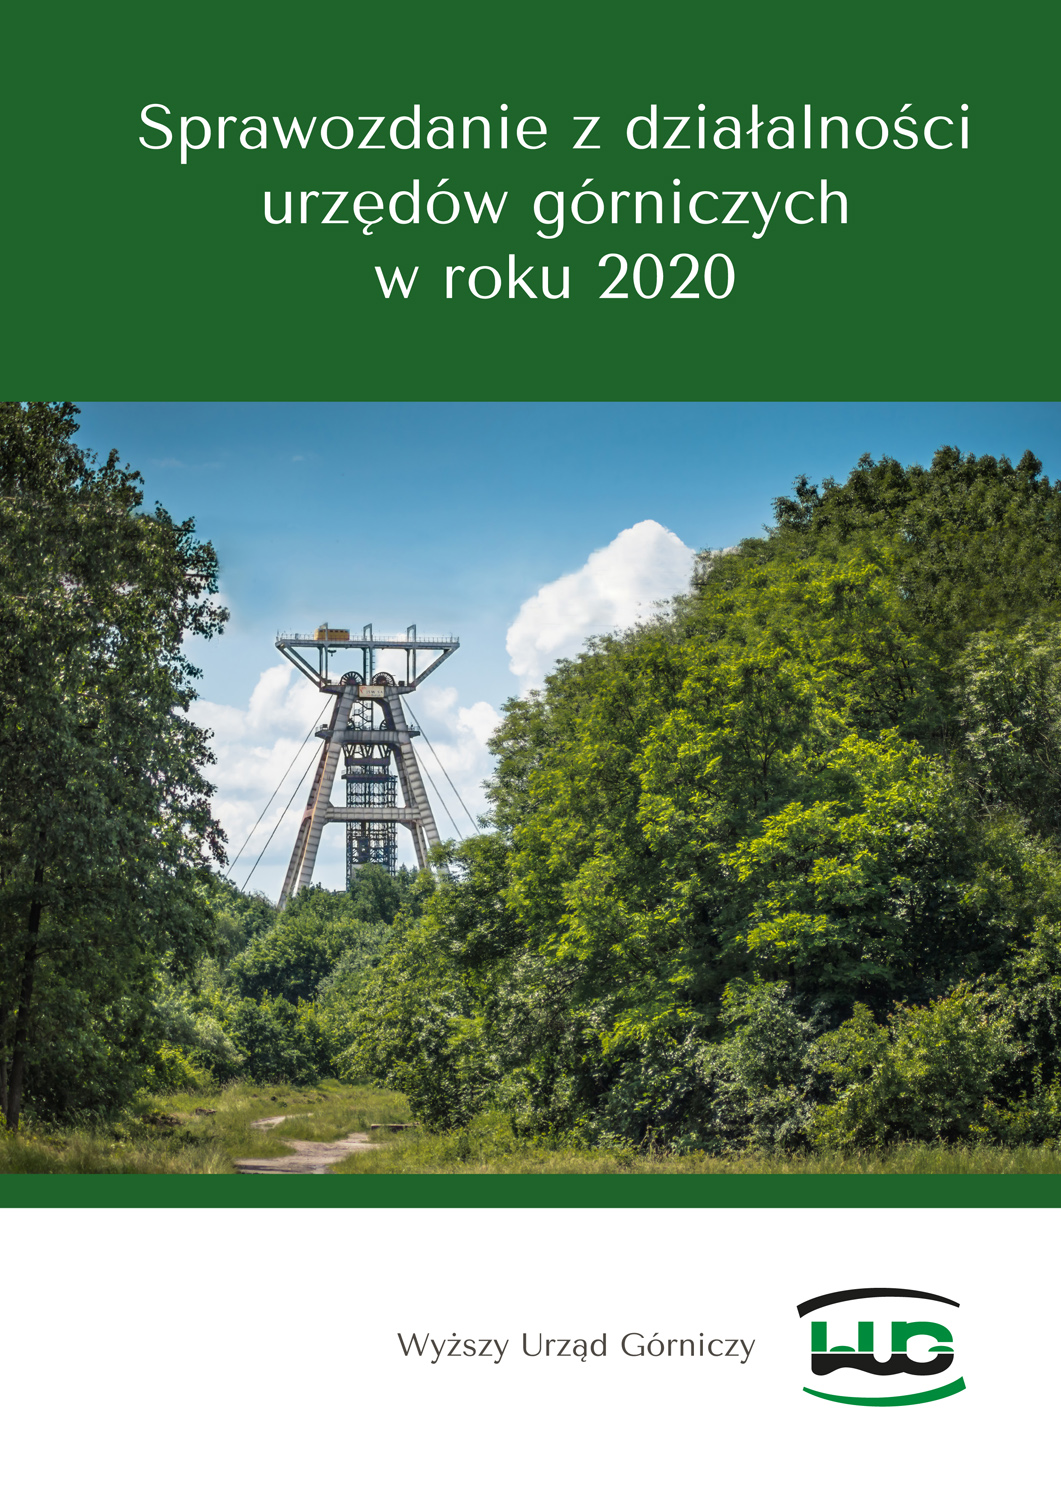 Strona tytułowa Sprawozdania z działalności urzędów górniczych w roku 2020